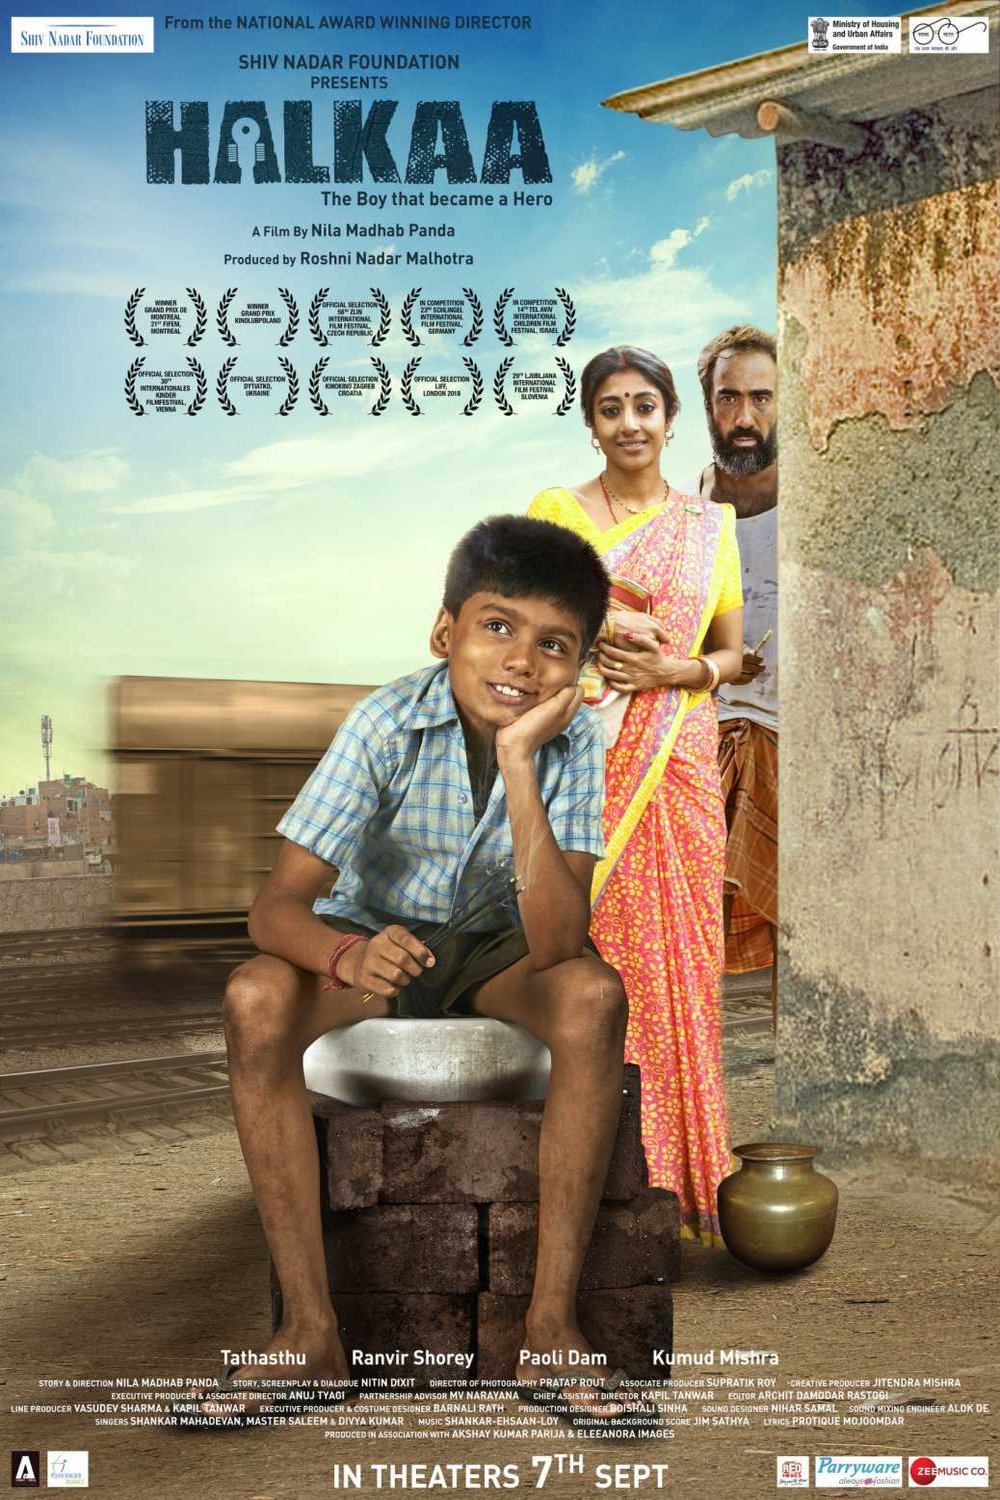 Hindi poster of the movie Halkaa